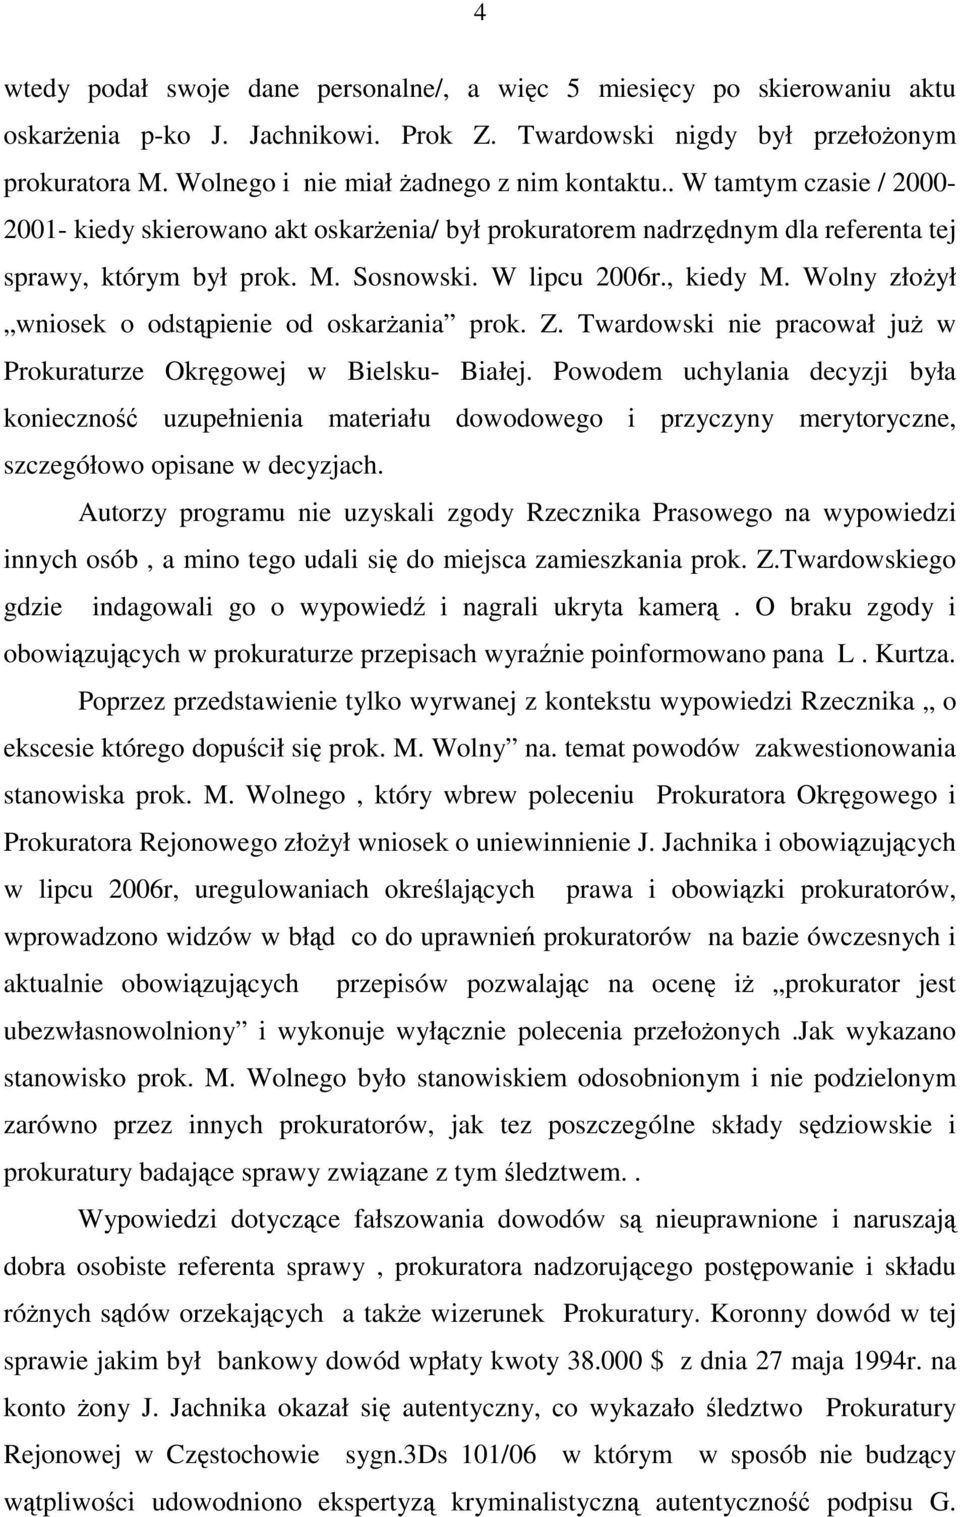 W lipcu 2006r., kiedy M. Wolny złoŝył wniosek o odstąpienie od oskarŝania prok. Z. Twardowski nie pracował juŝ w Prokuraturze Okręgowej w Bielsku- Białej.